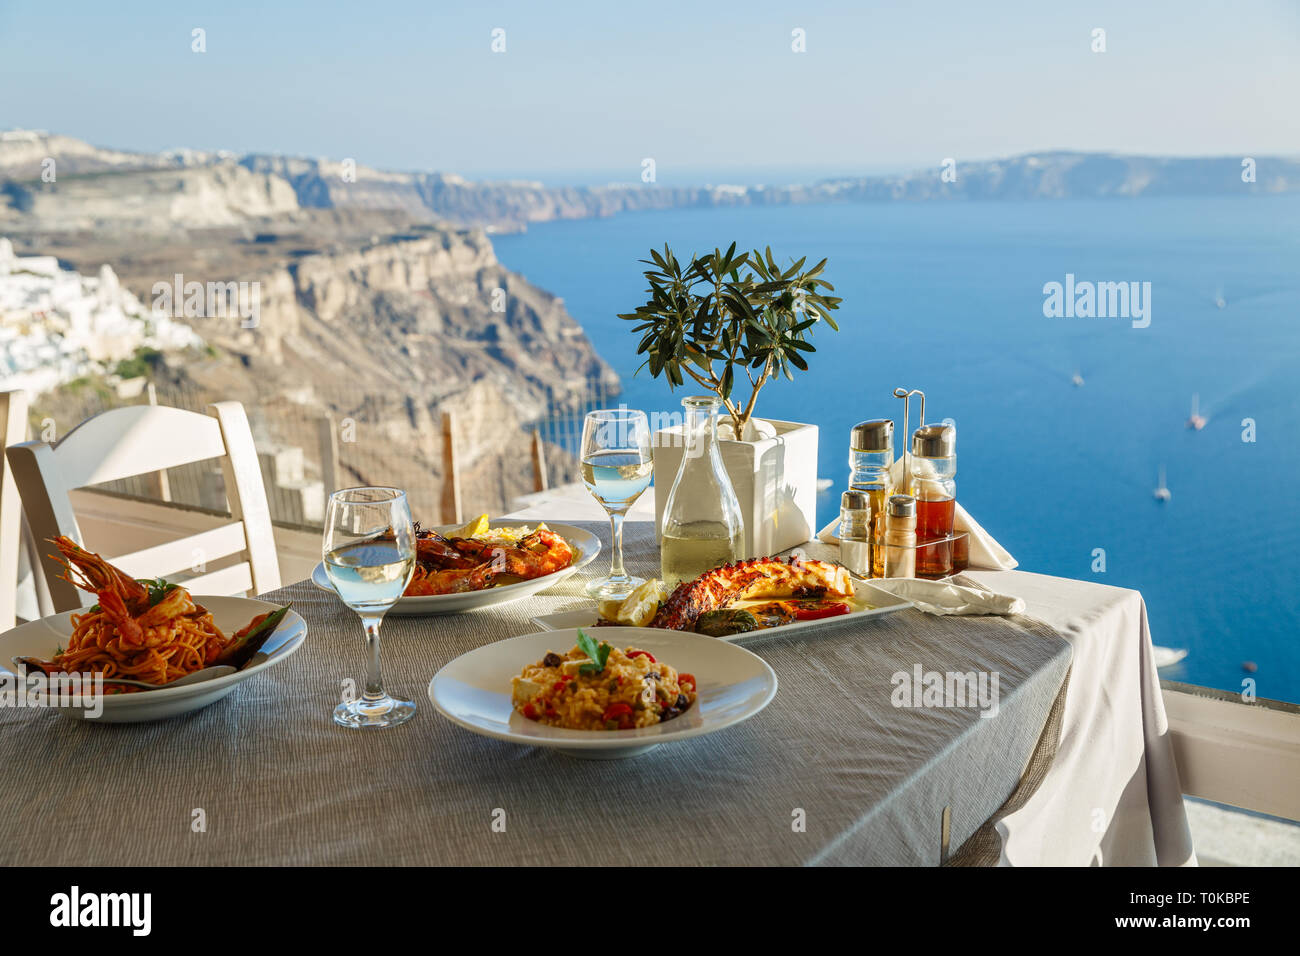 Ein Abendessen für Zwei mit Fisch und Wein, eine Tabelle auf dem Hintergrund des Meeres Stockfoto